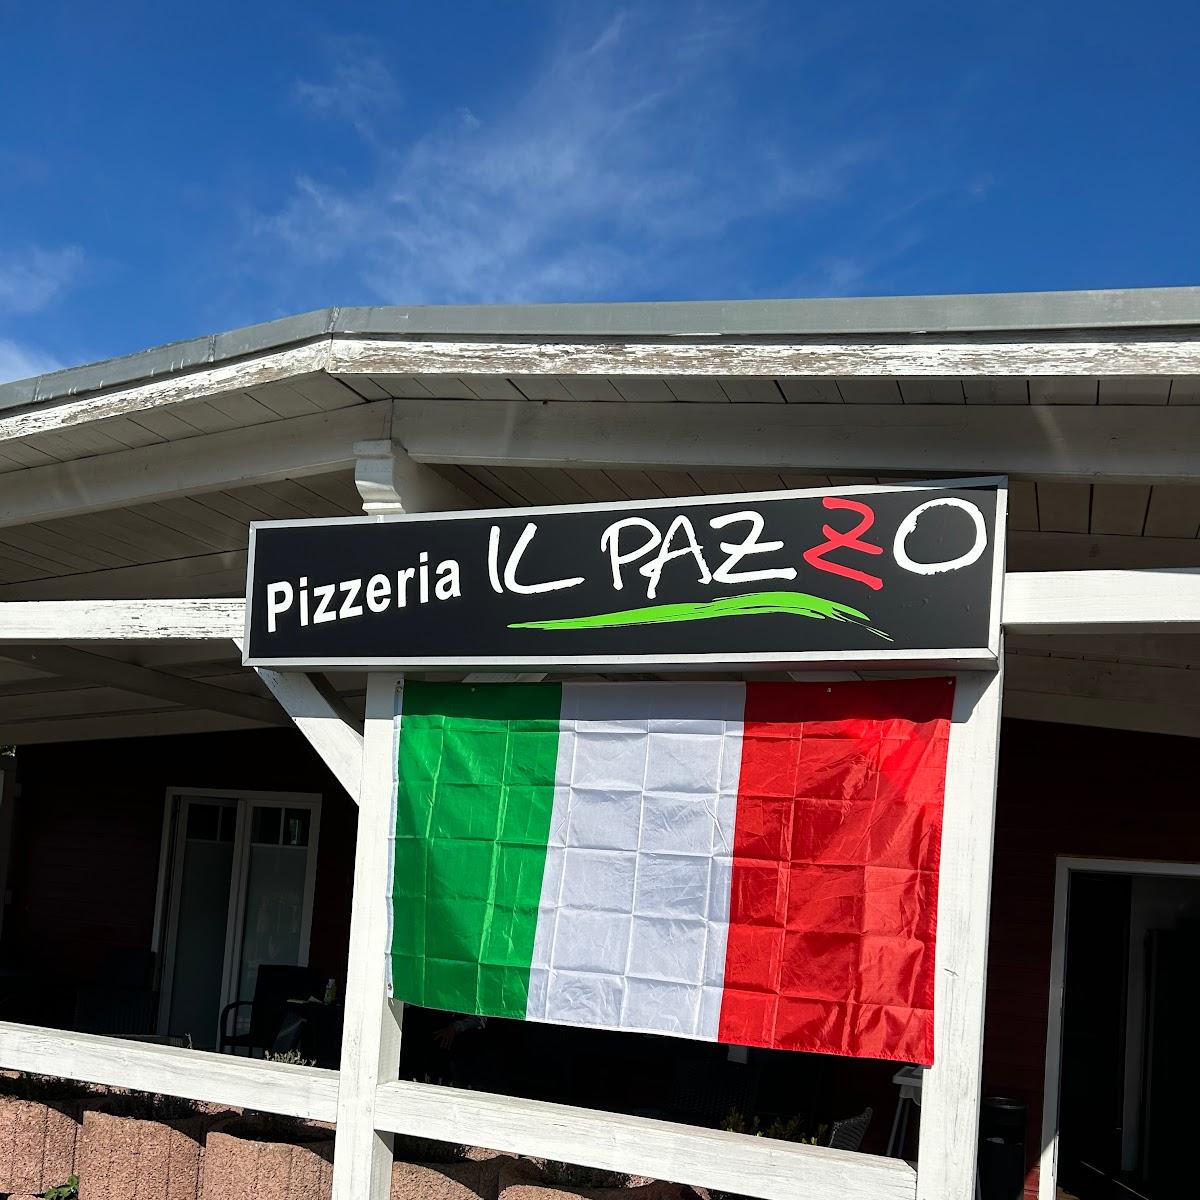 Restaurant "Pizzeria IL PAZZO Inh. Melanie Weinz" in Florstadt